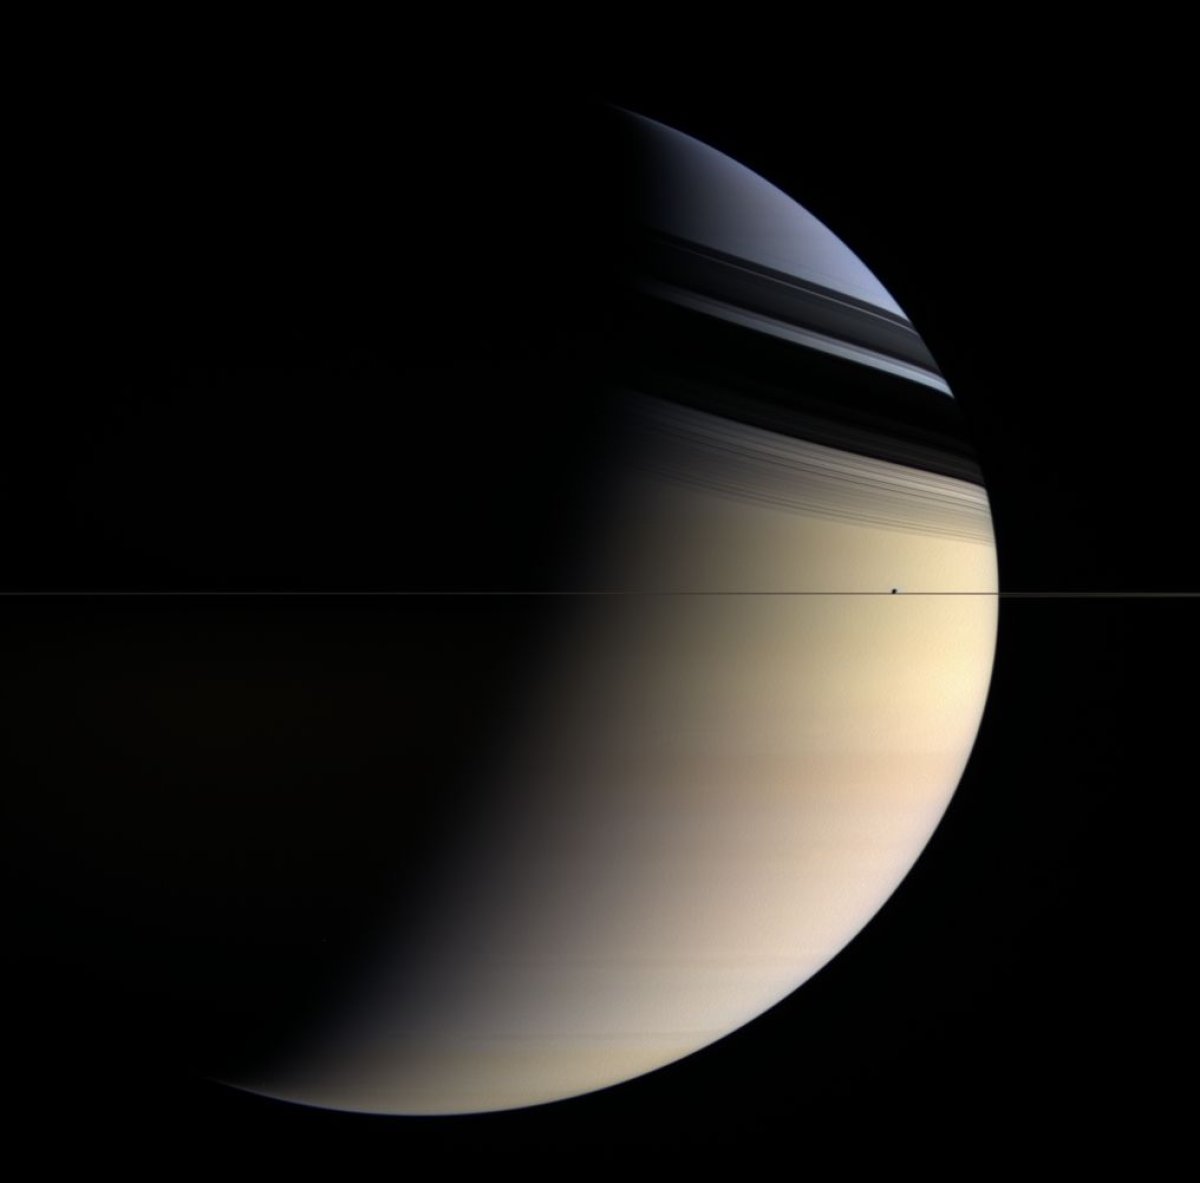 09_06_Cassini_Saturn_14